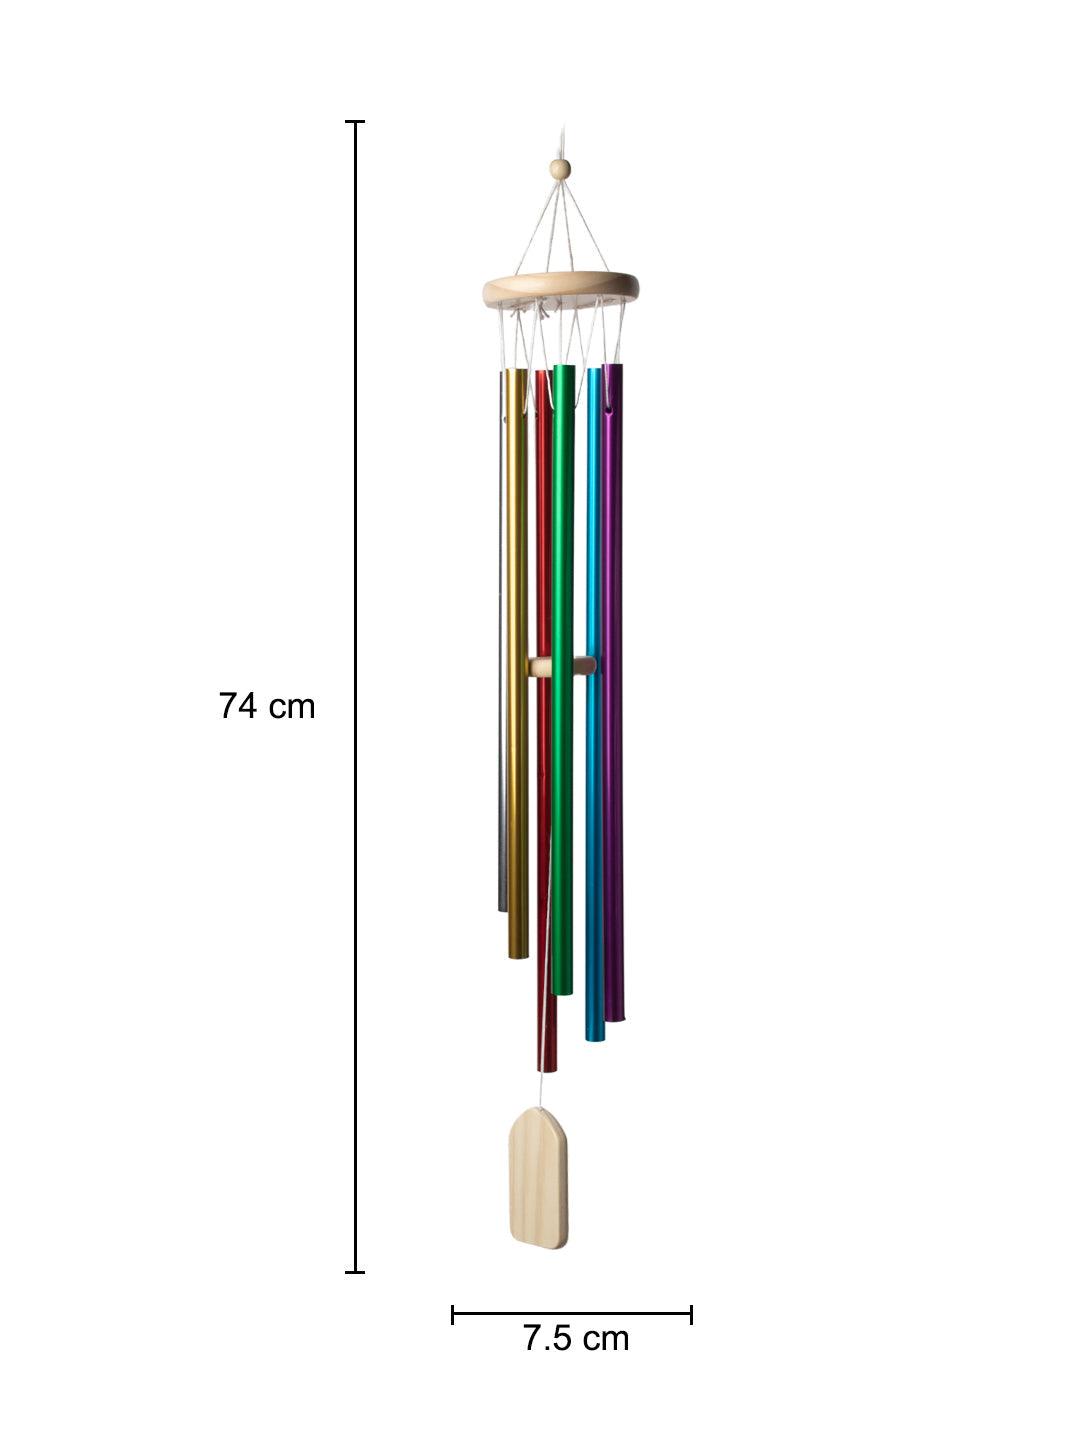 Unique Multicolor Decorative Wind Chime For Home - 8.5 X 8.5 X 74 Cm - 5